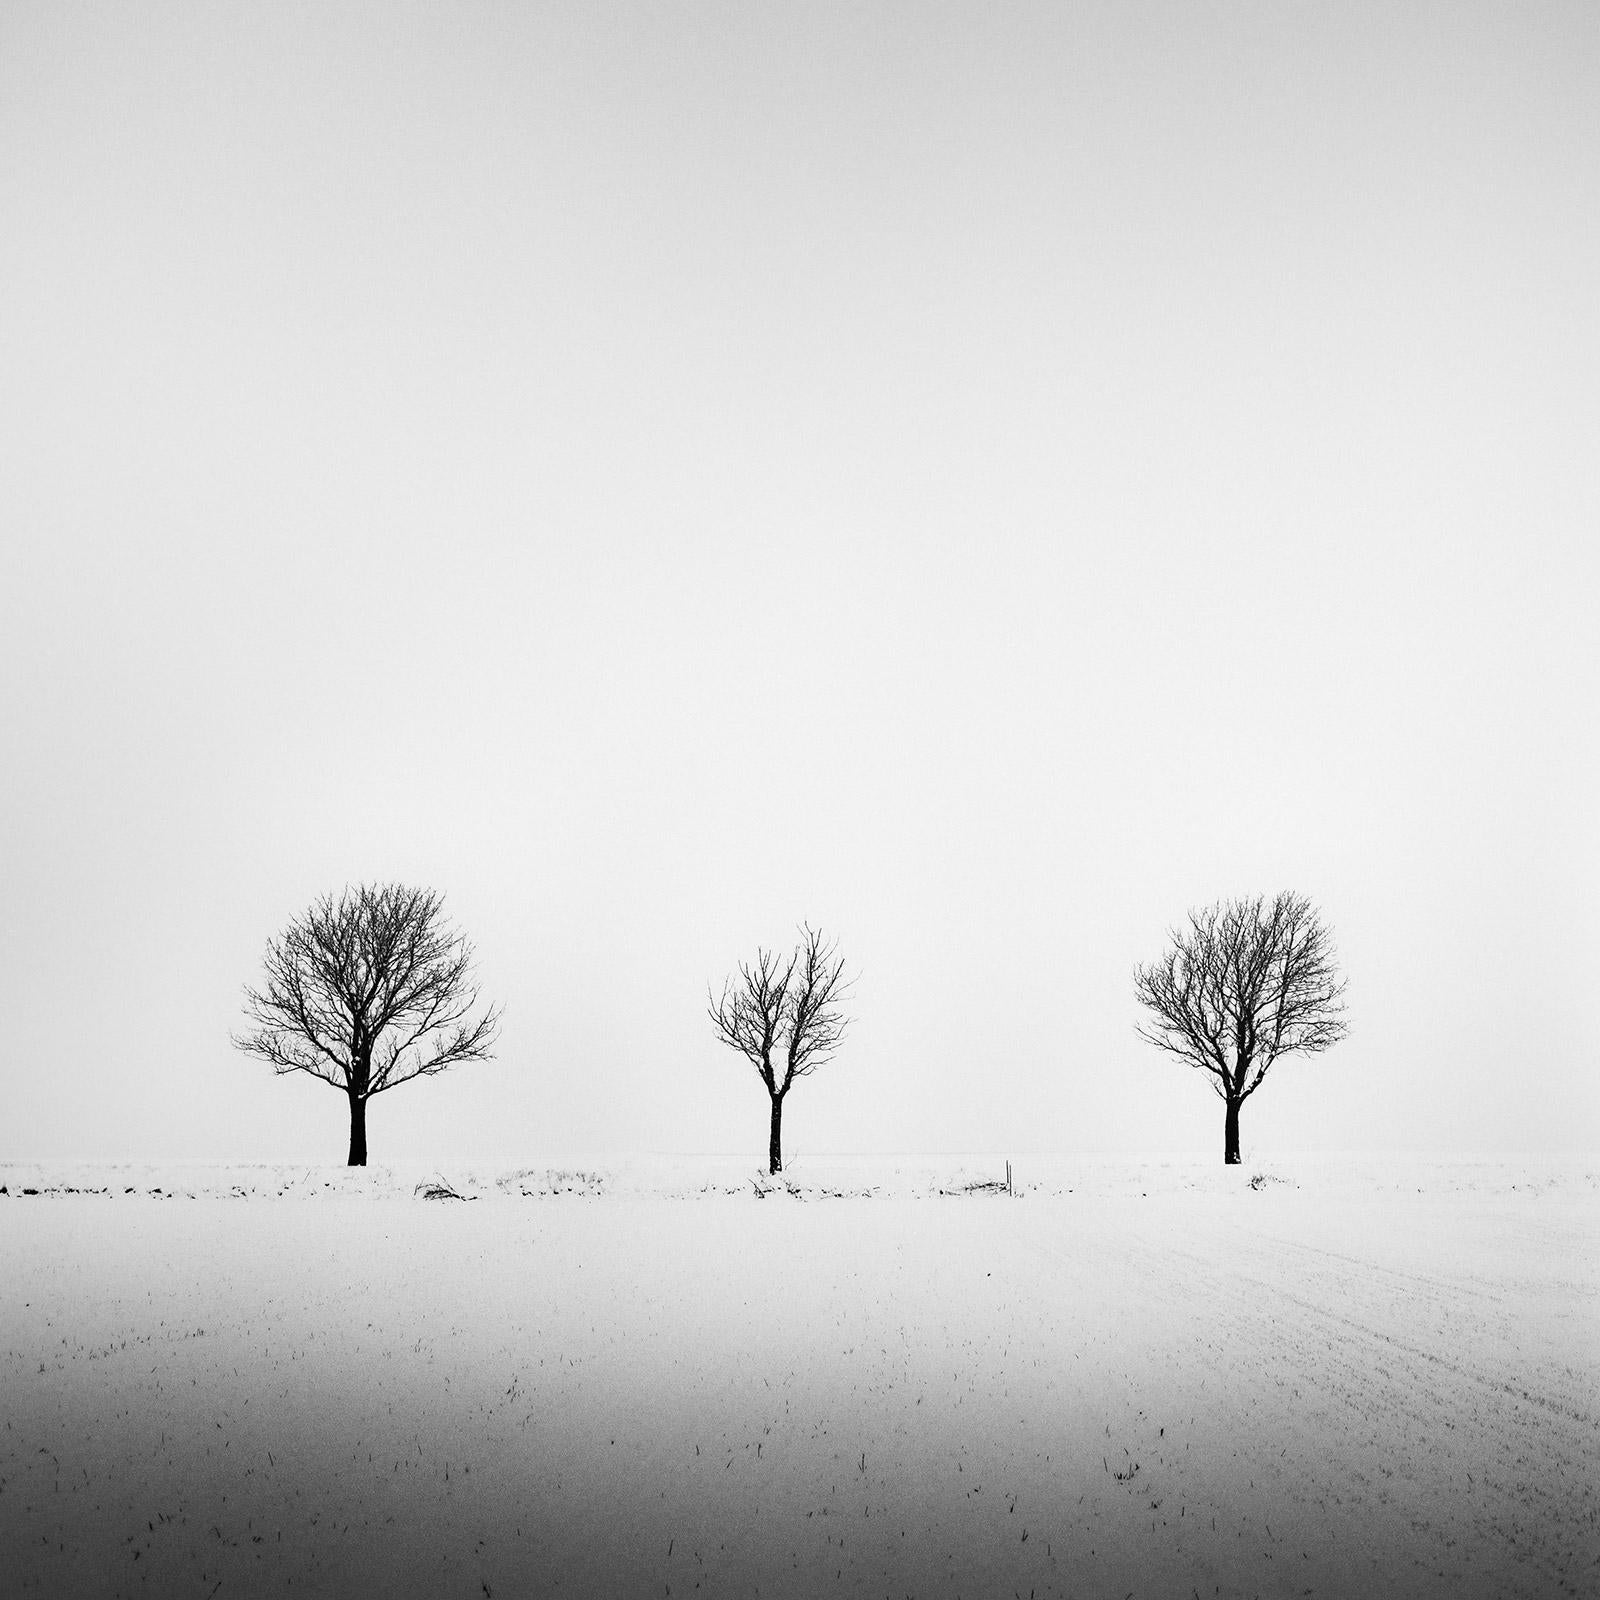 Black and White Photograph Gerald Berghammer - Arbres dans un champ enneigé, art minimal, photographie en noir et blanc, paysage